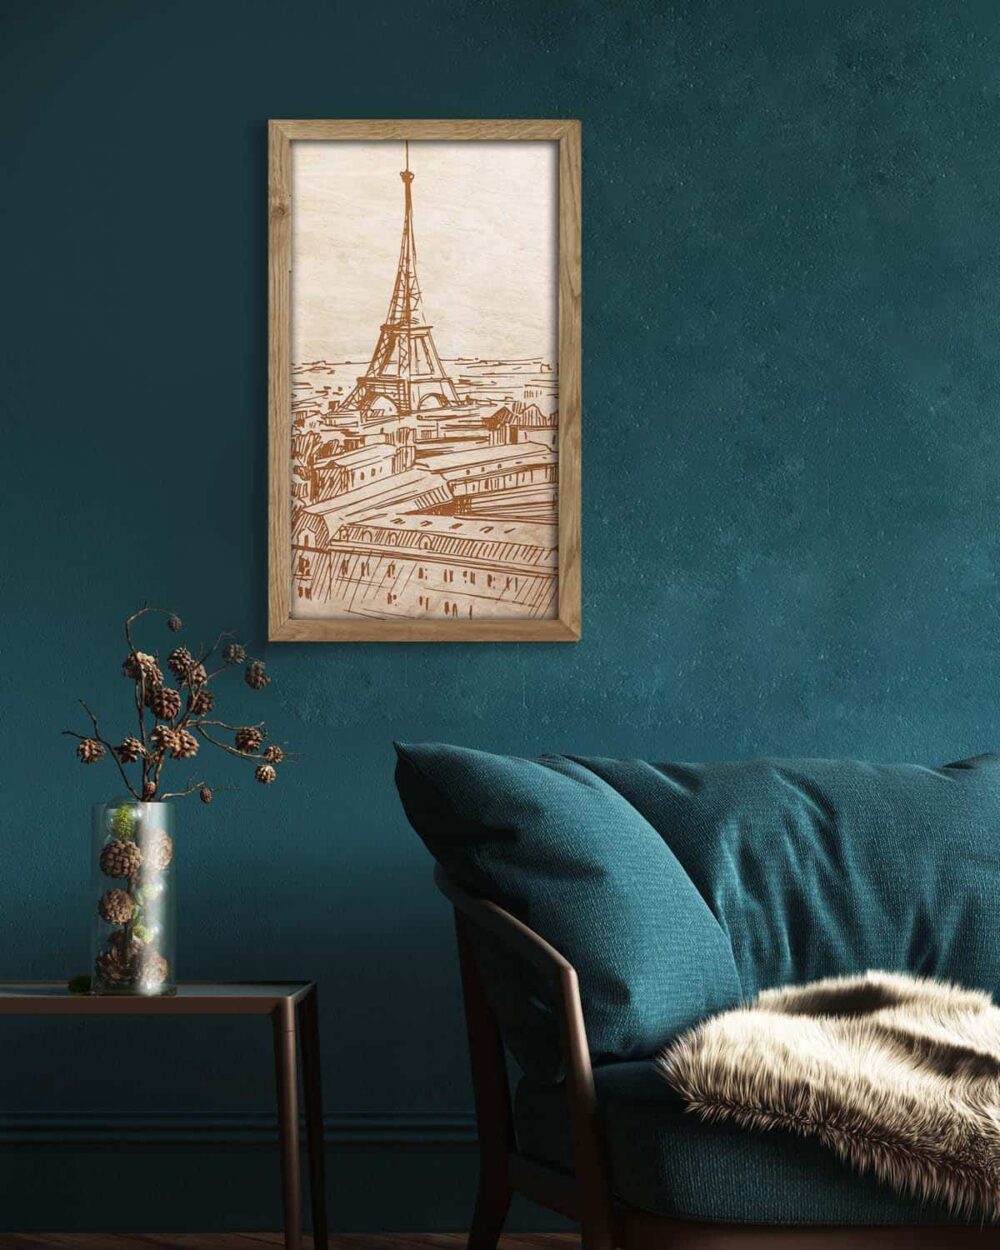 Holzbild des Eiffelturms, in einem Eichenholzrahmen